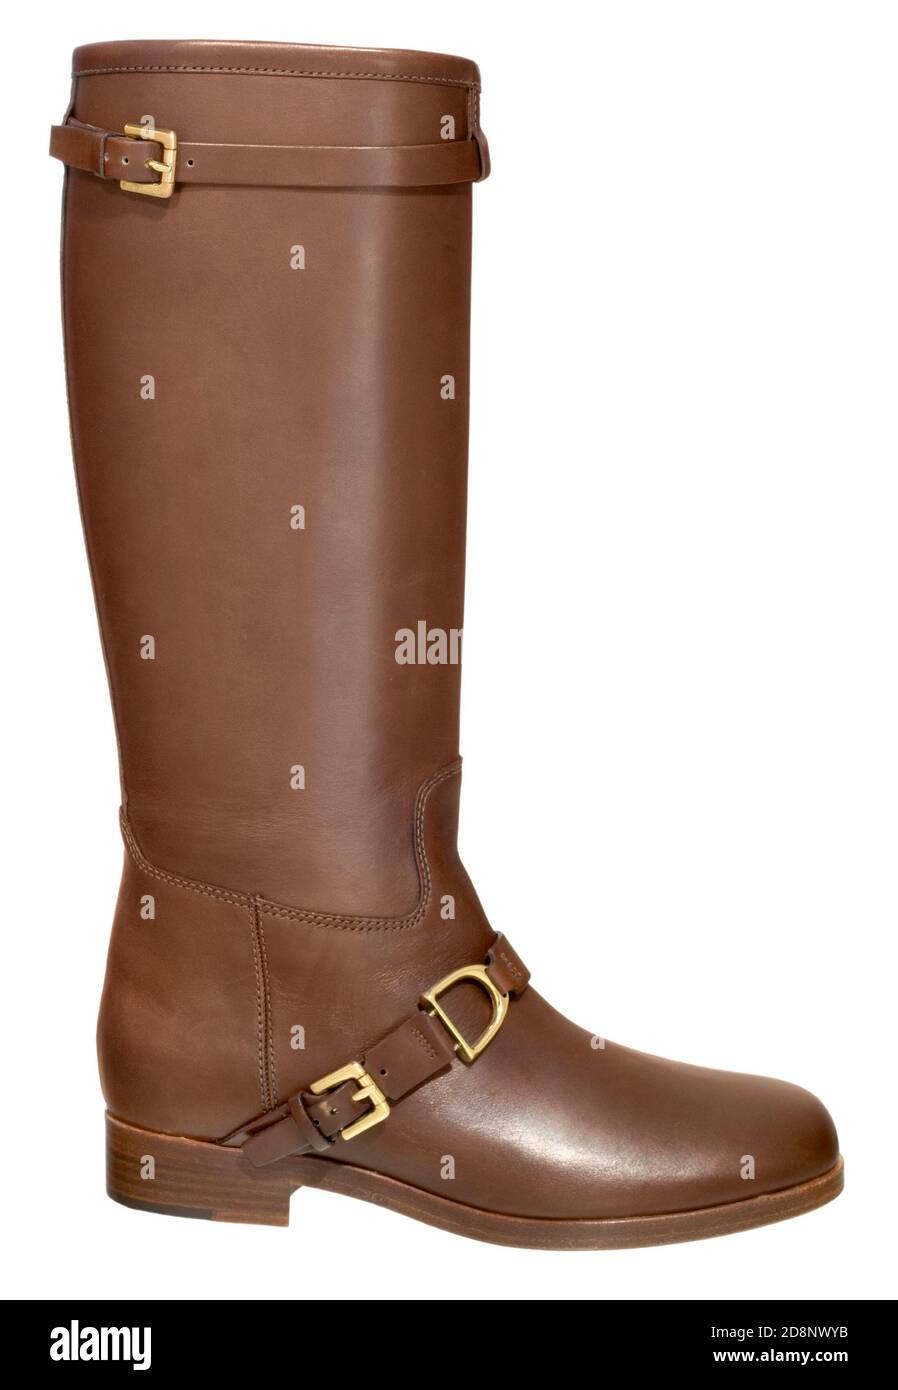 ralph lauren tall brown boots